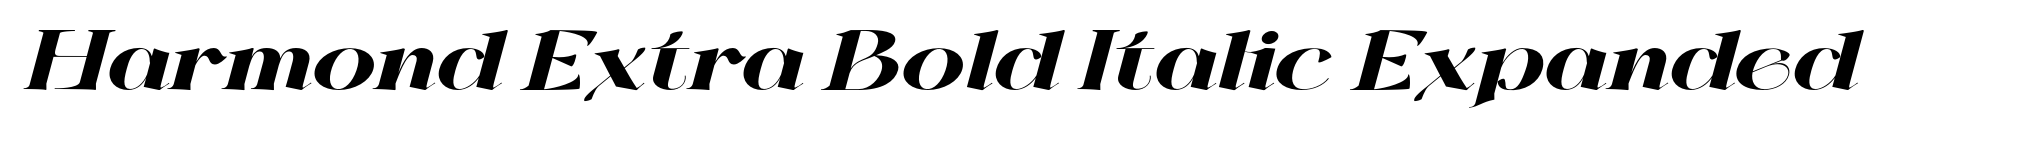 Harmond Extra Bold Italic Expanded image